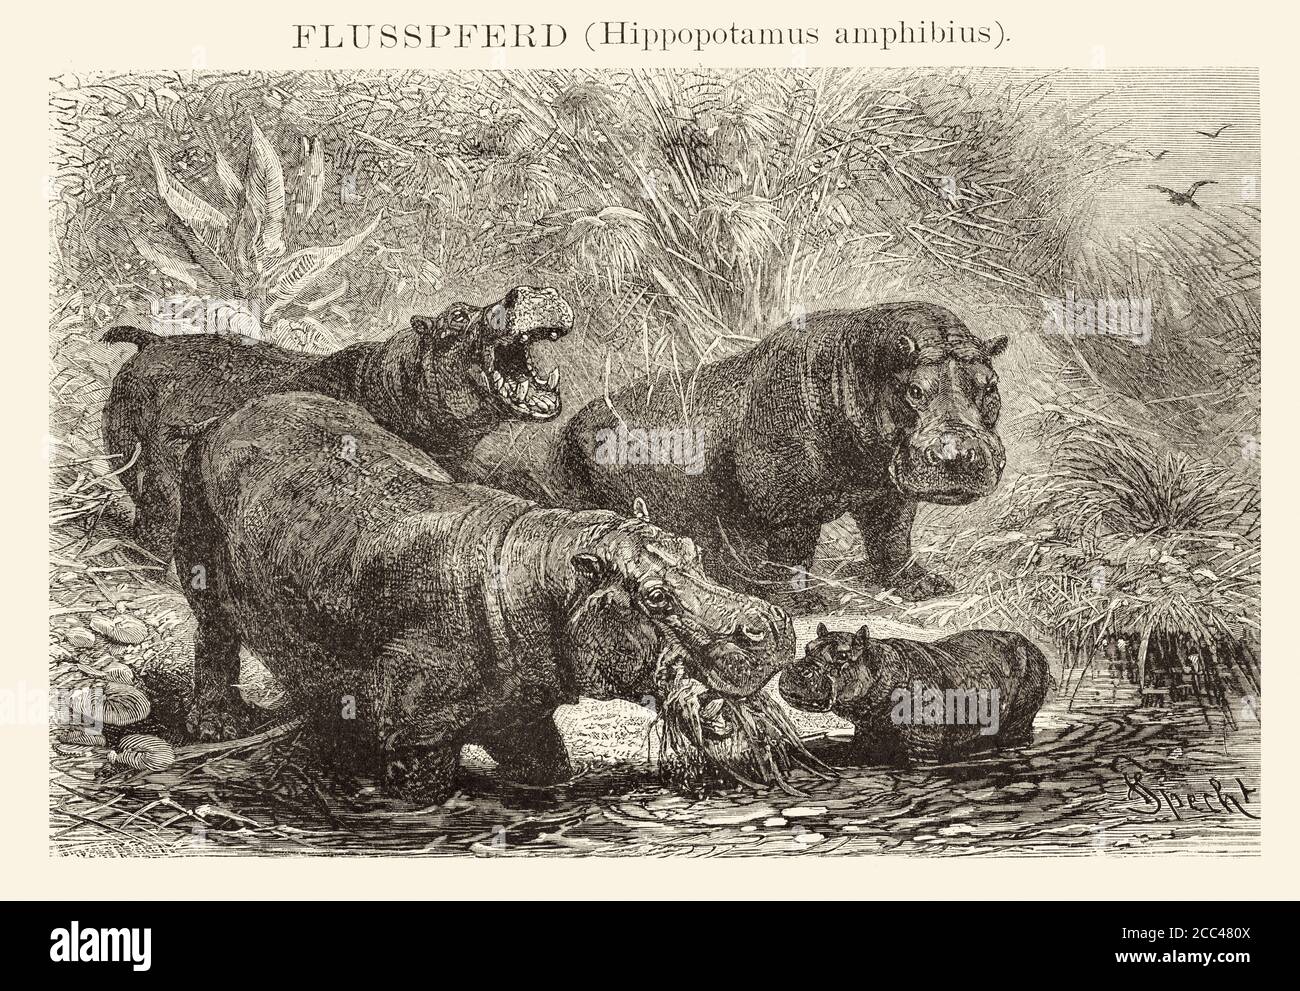 Der Hippopotamus (Hippopotamus amphibius), auch Hippo genannt, ist ein großer, meist pflanzenfresser, semiaquat Stockfoto